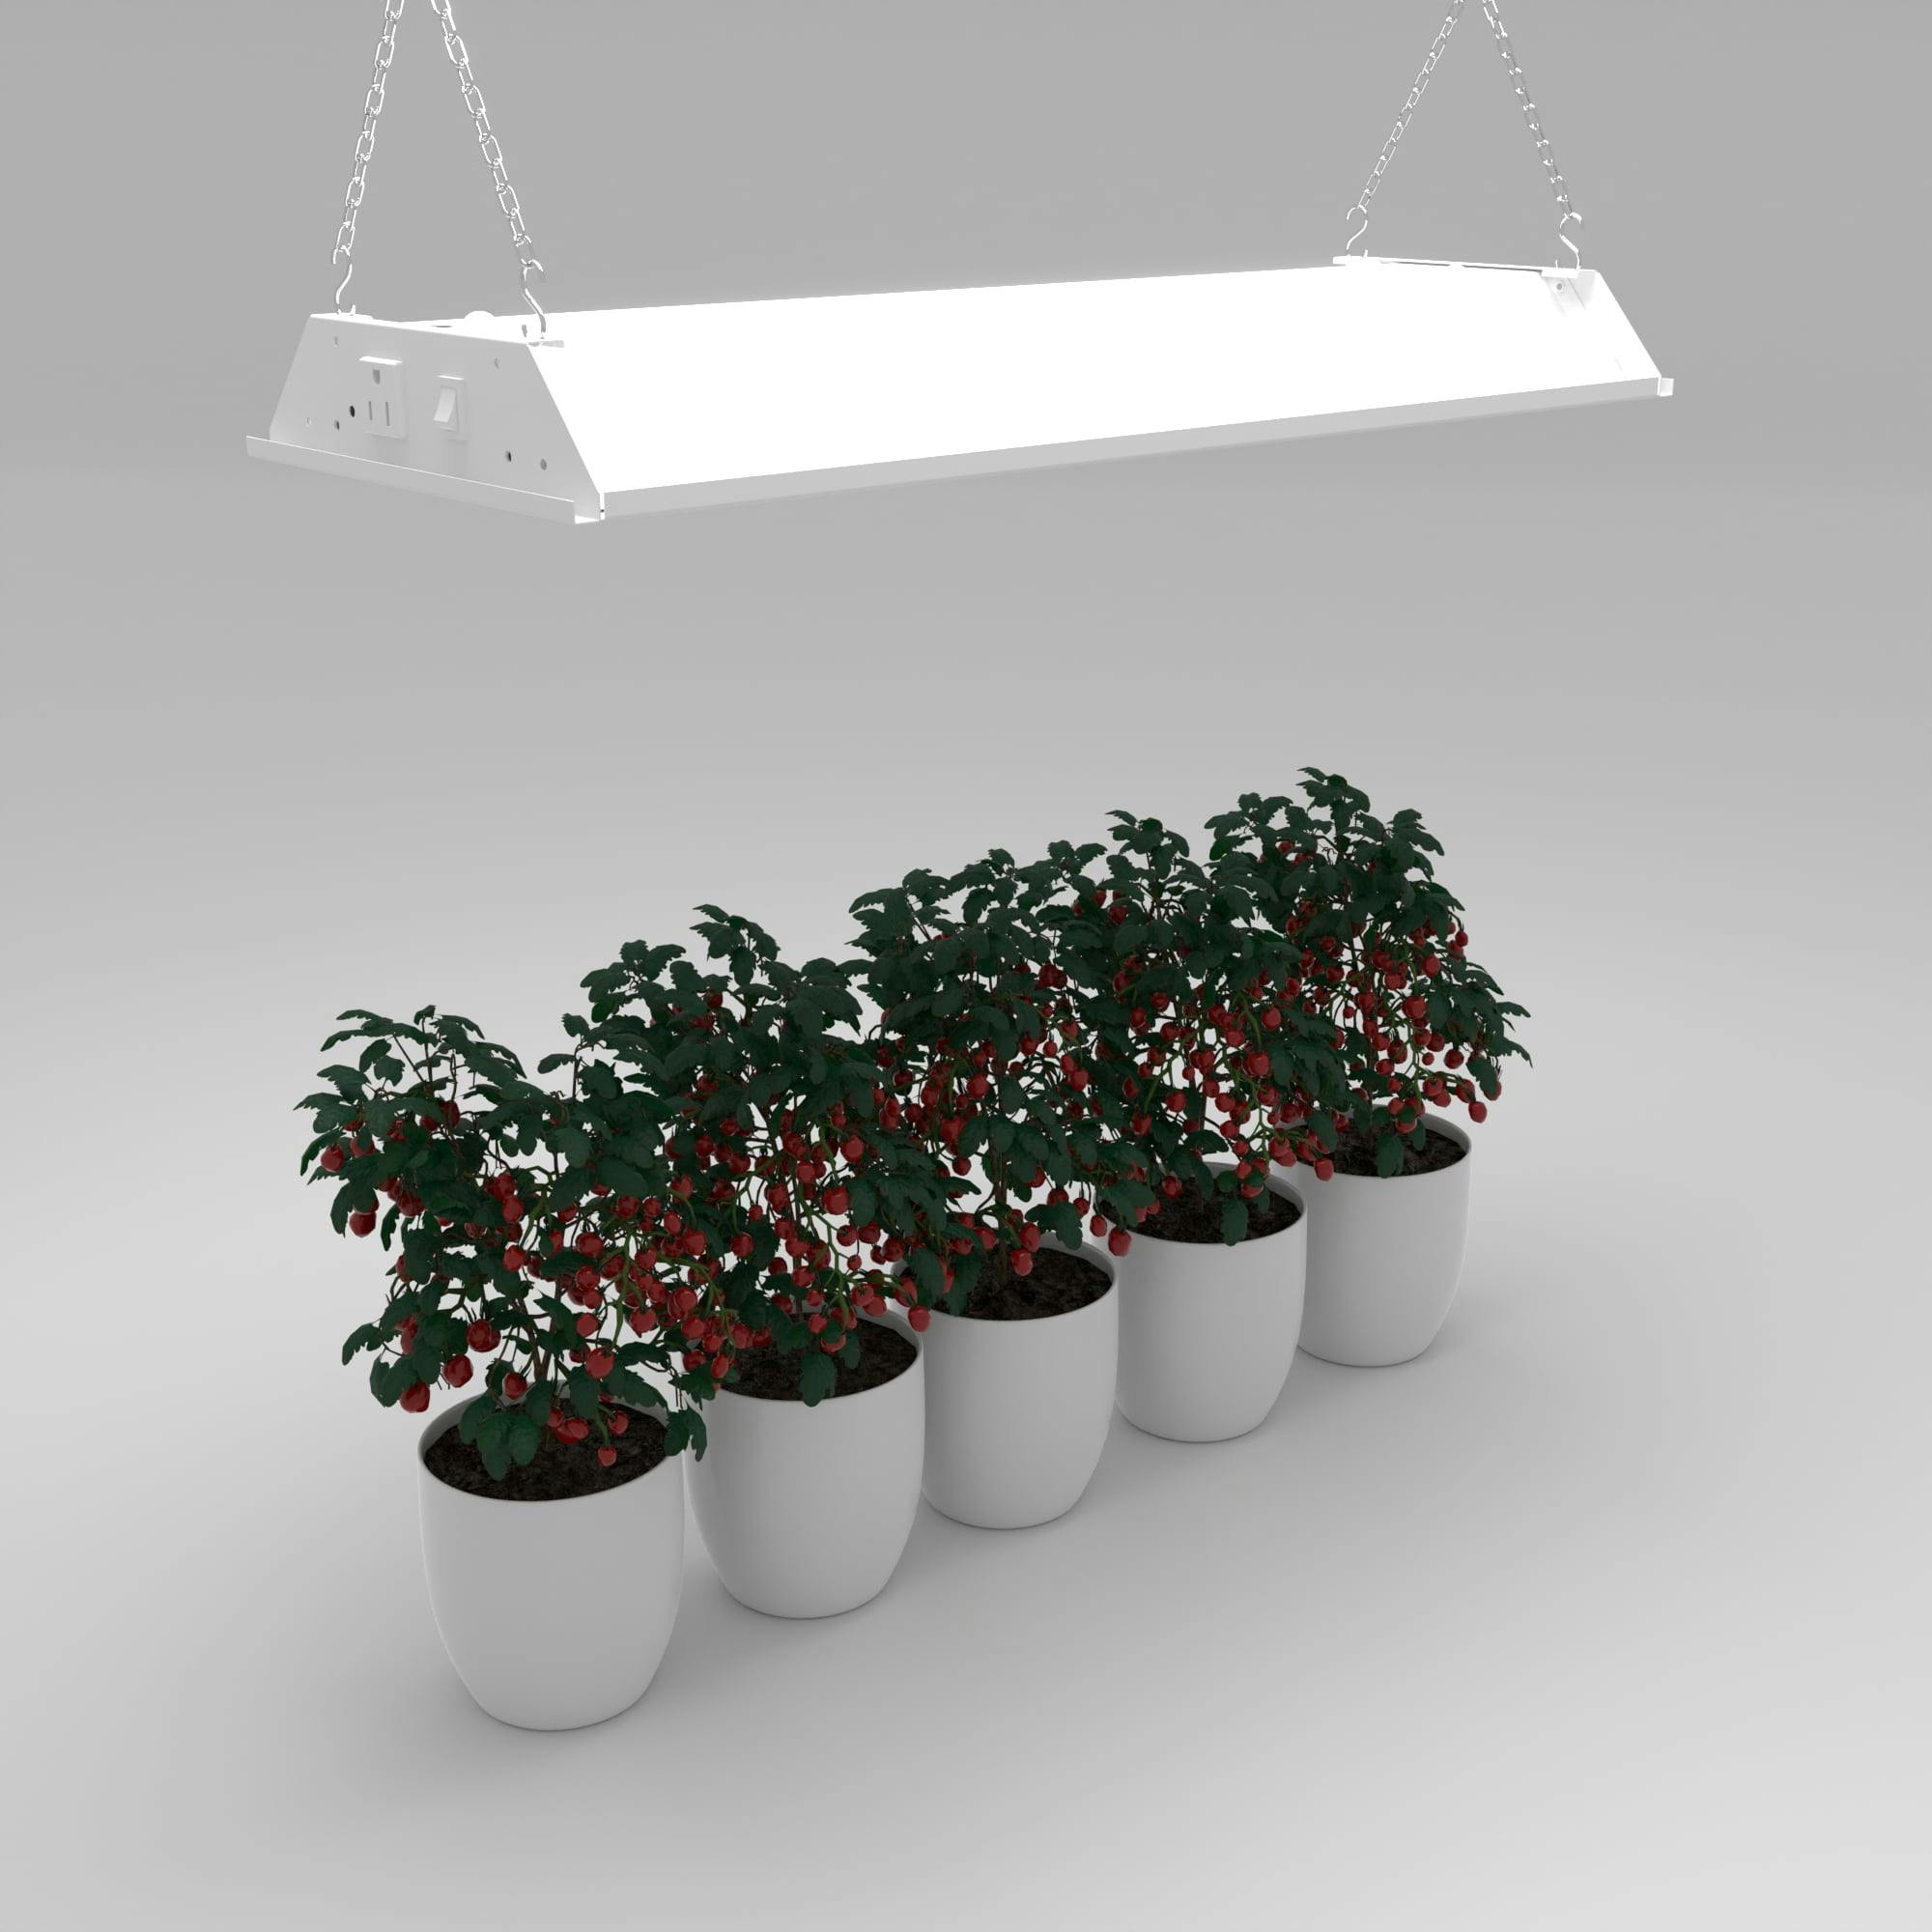 Slimline 28'' Full Spectrum LED Plant Grow Light, Linkable Design